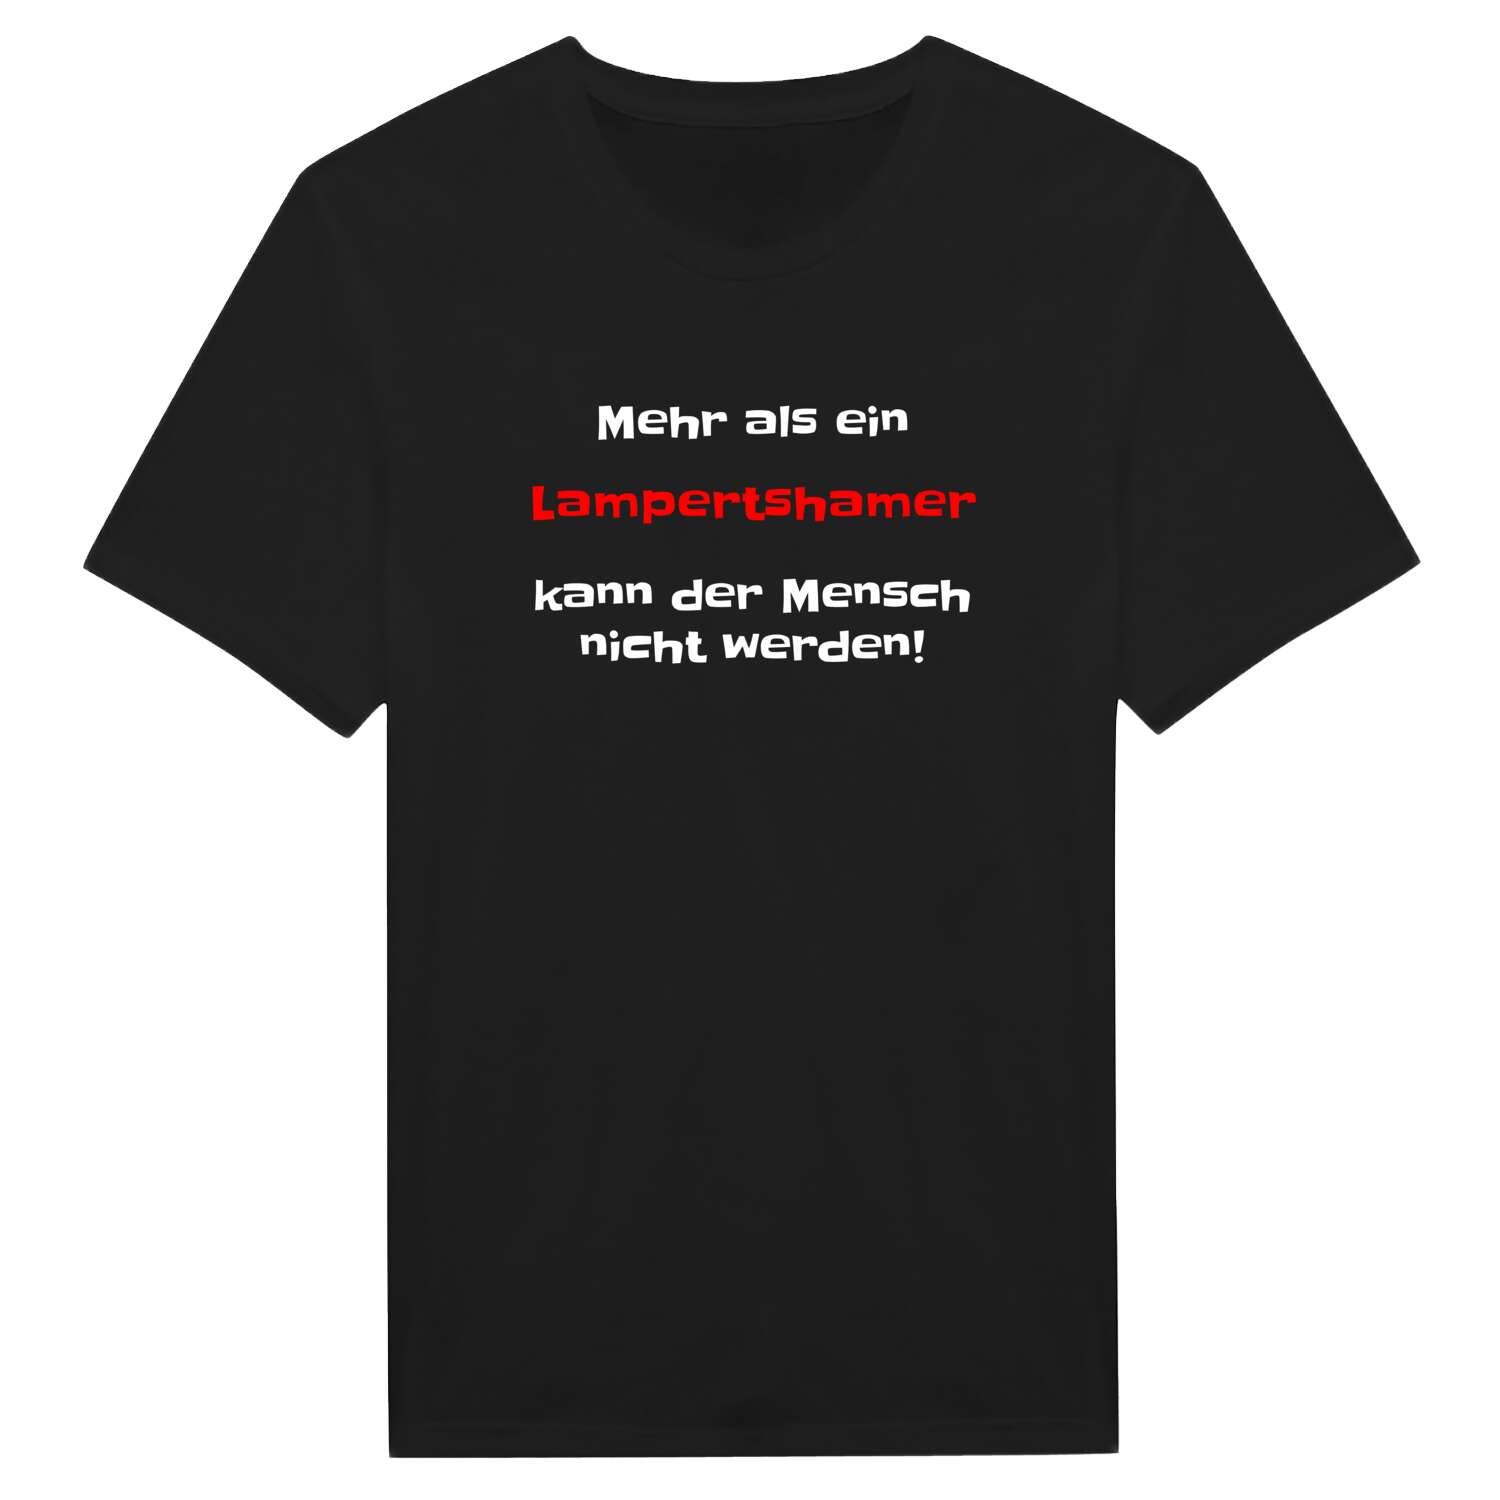 Lampertsham T-Shirt »Mehr als ein«